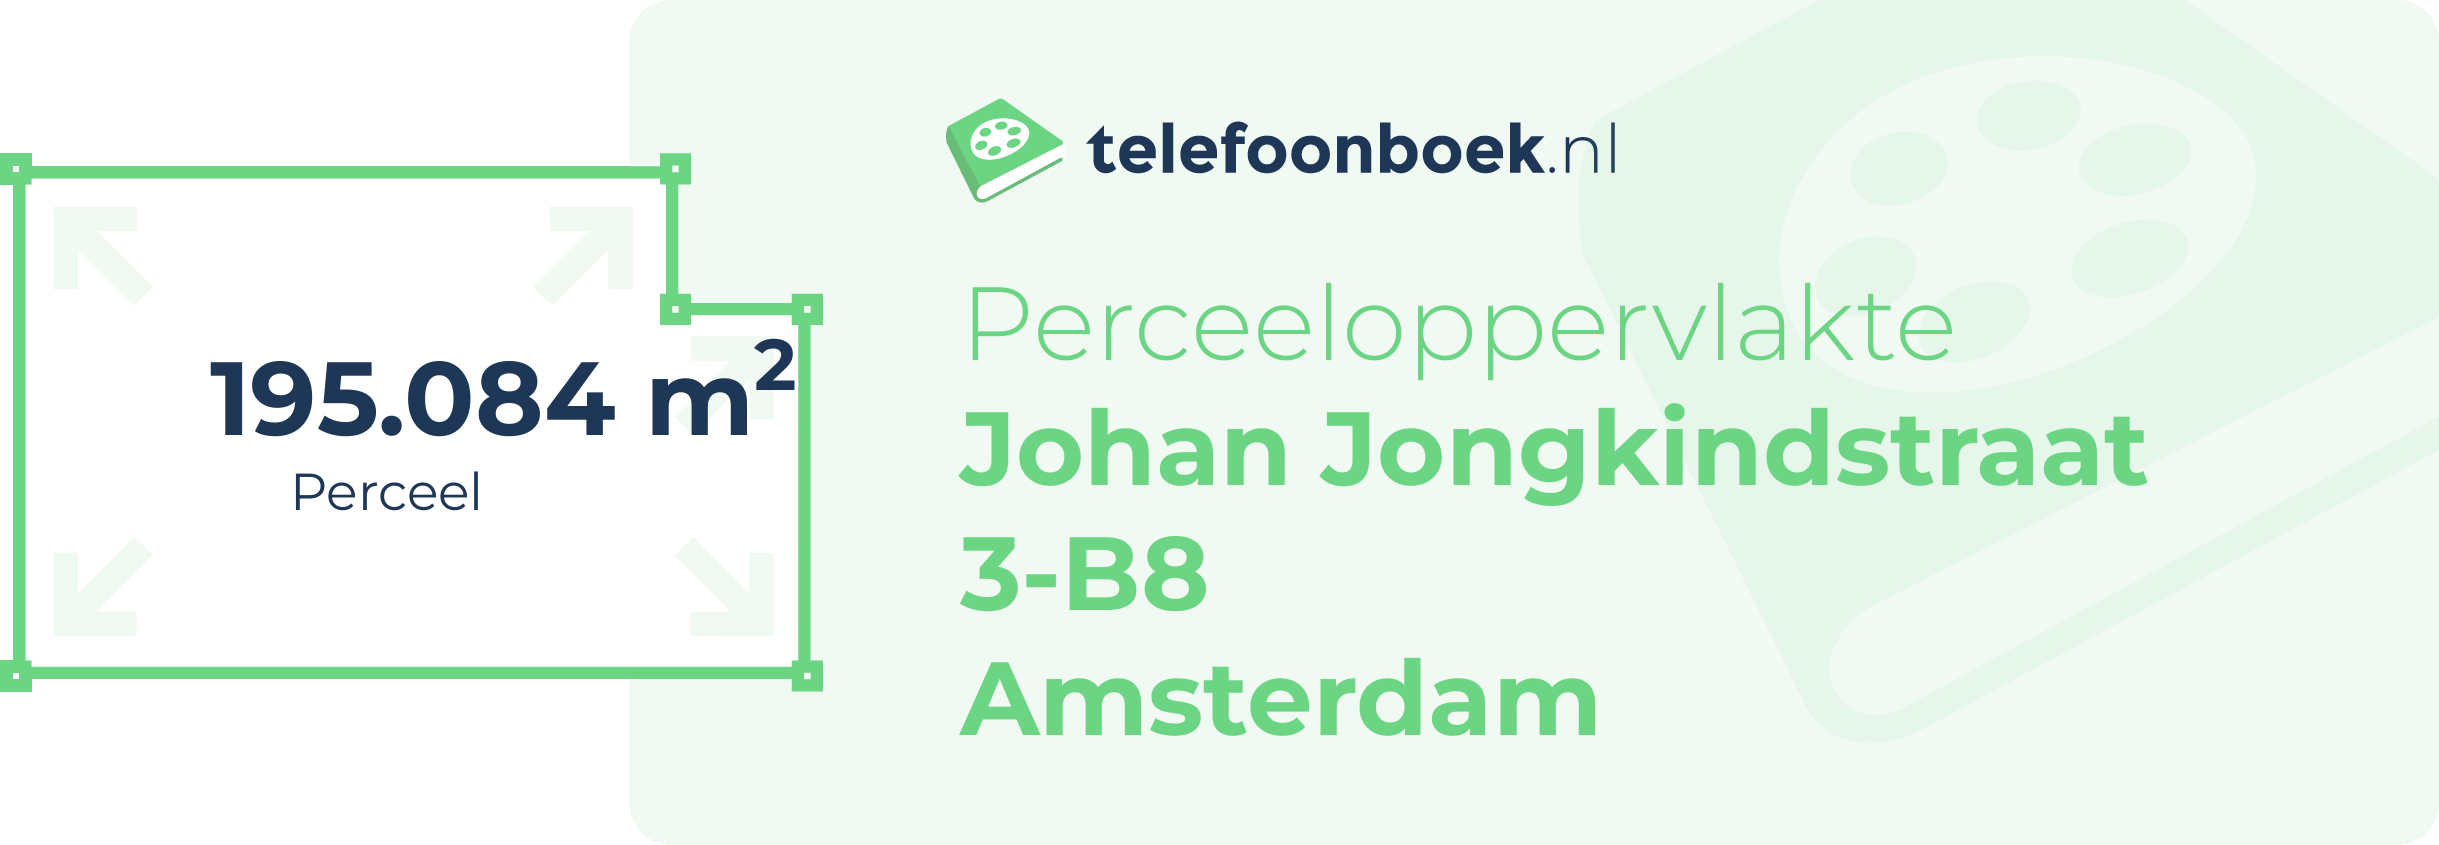 Perceeloppervlakte Johan Jongkindstraat 3-B8 Amsterdam